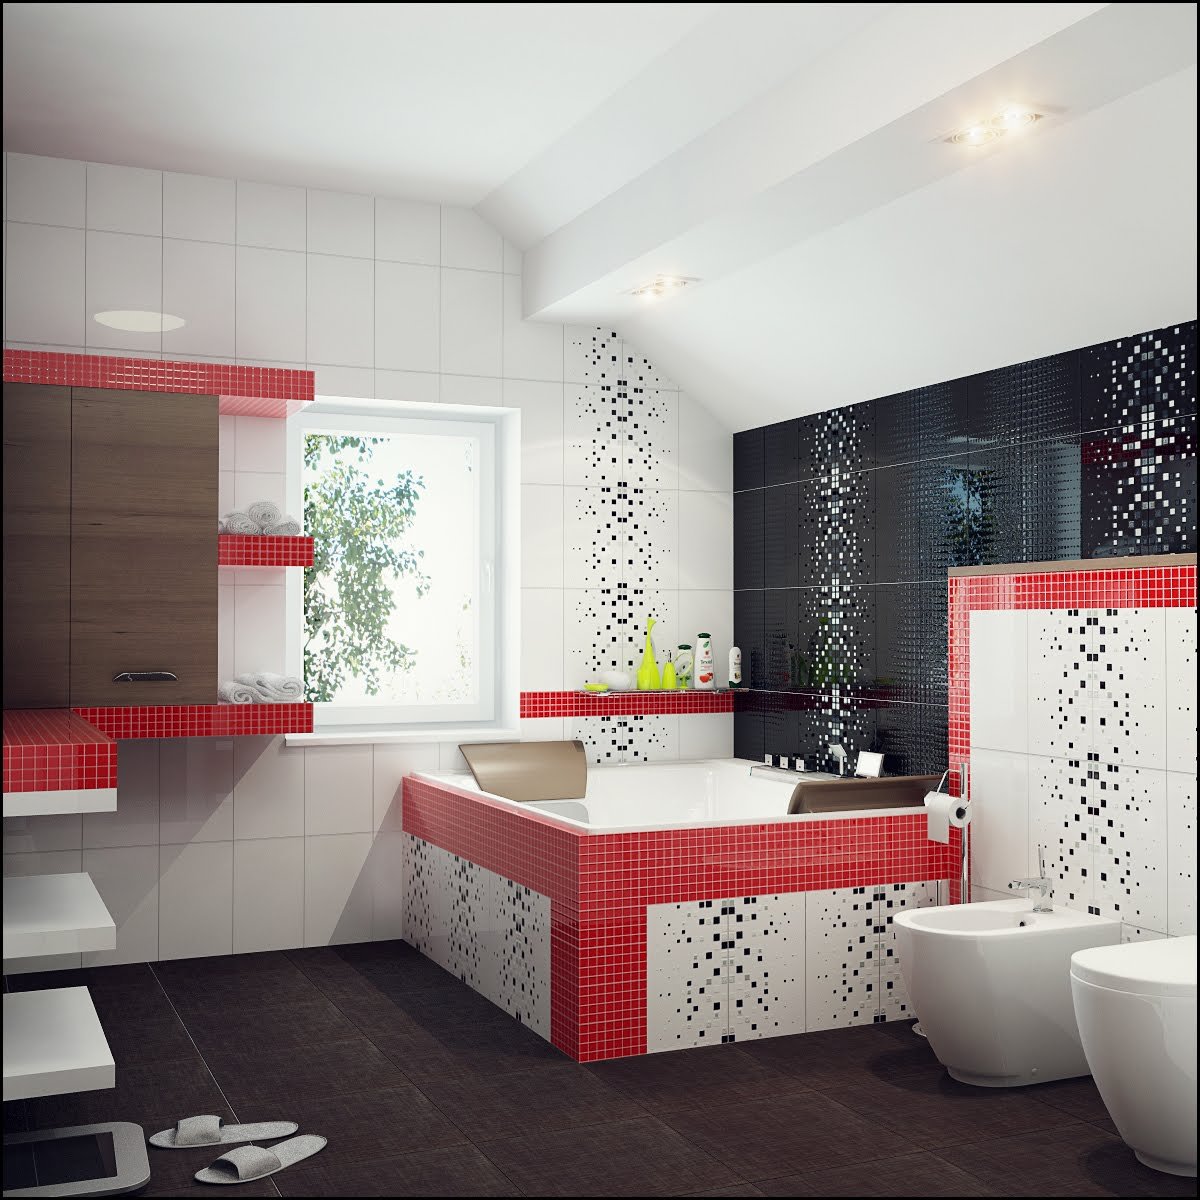 Дизайн ванны кафелем фото. Плитка для ванной. Ванные комнаты плитка. Интерьер ванной комнаты плитка. Мозаика в интерьере ванной комнаты.